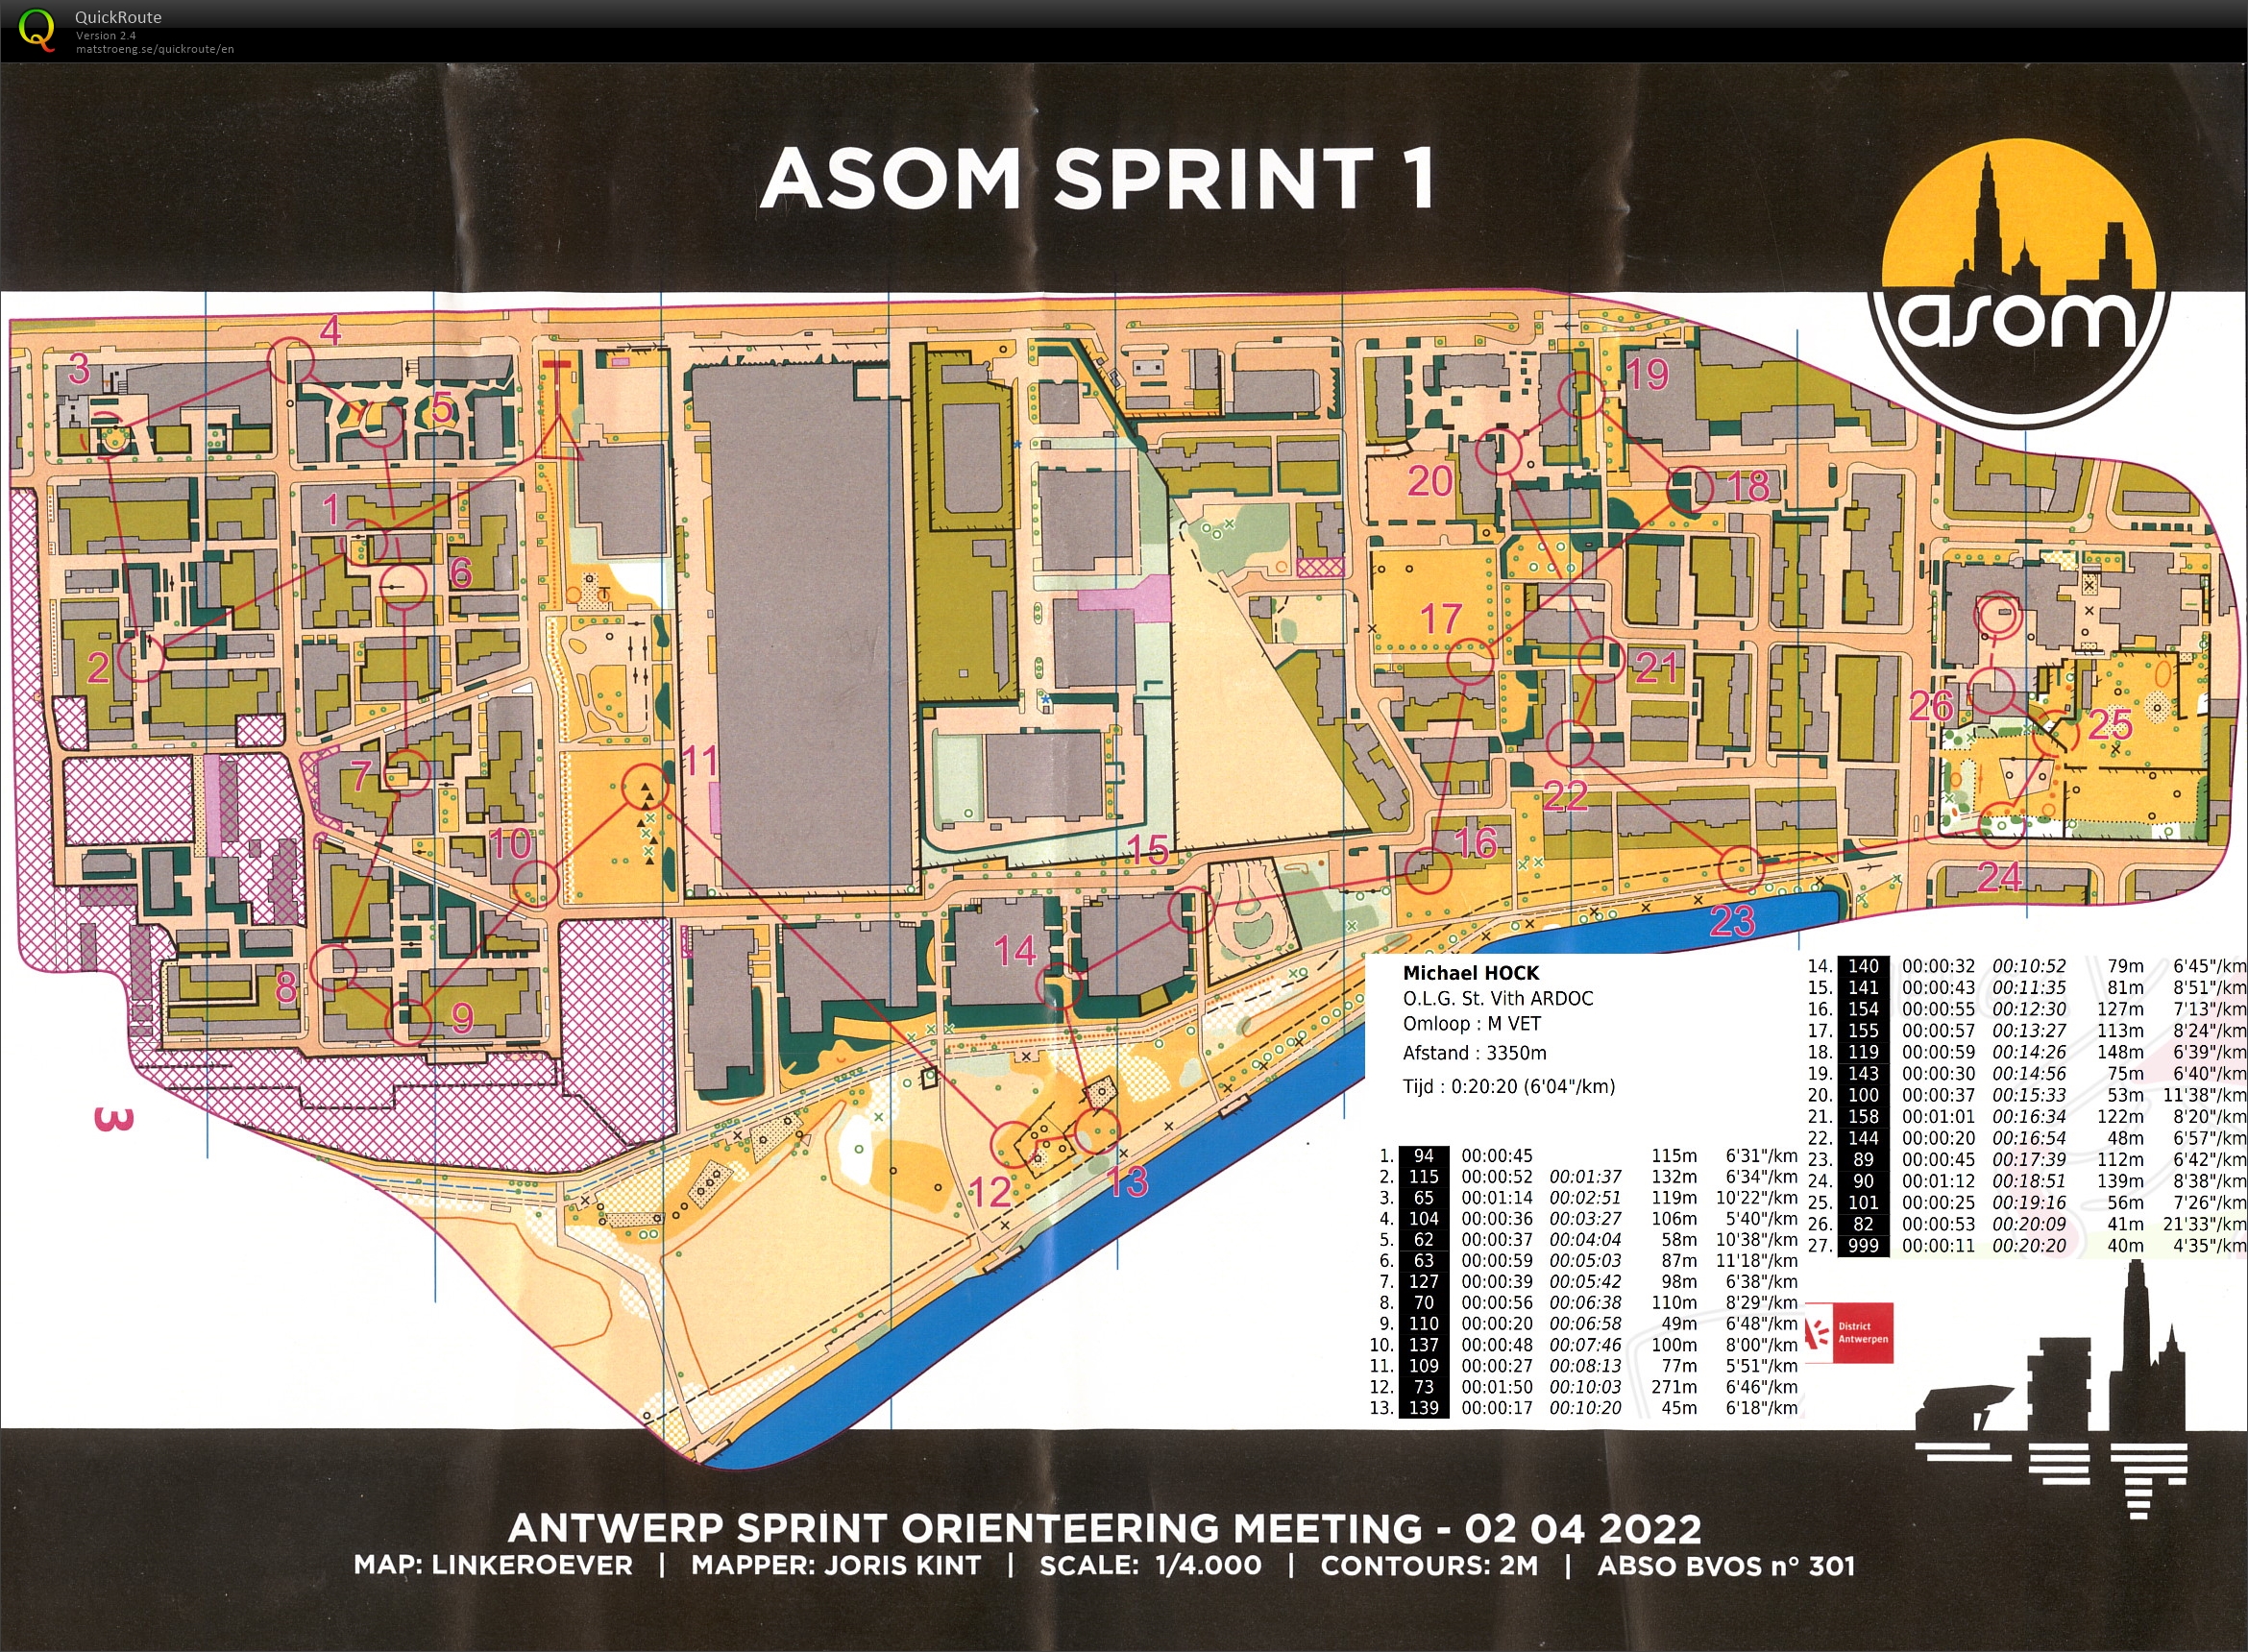 ASOM Sprint 1 (02-04-2022)